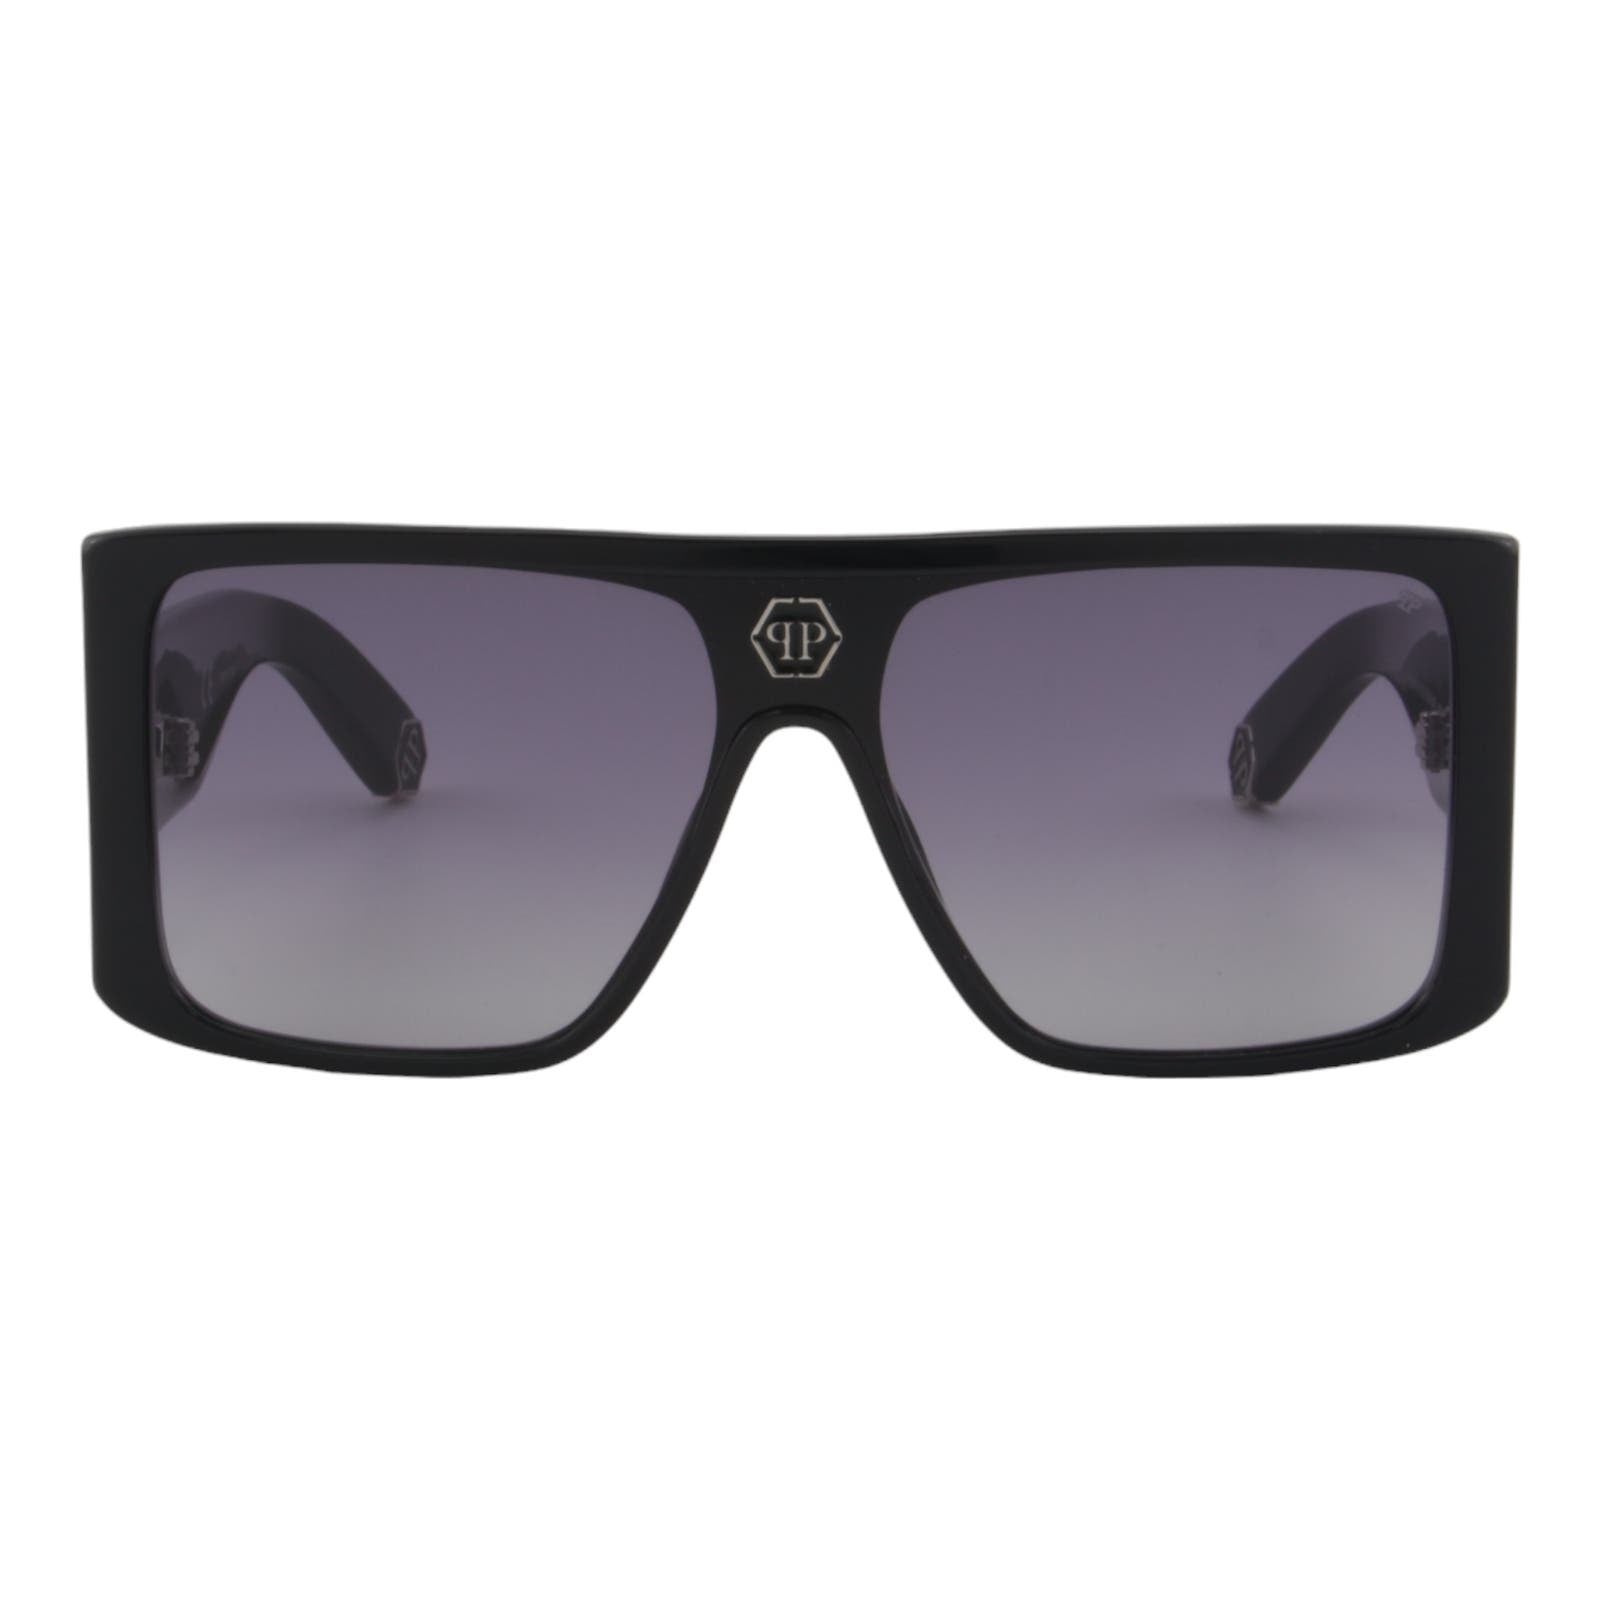 Men Rectangular Shield Sunglasses SPP014V-0700 Black & Silver